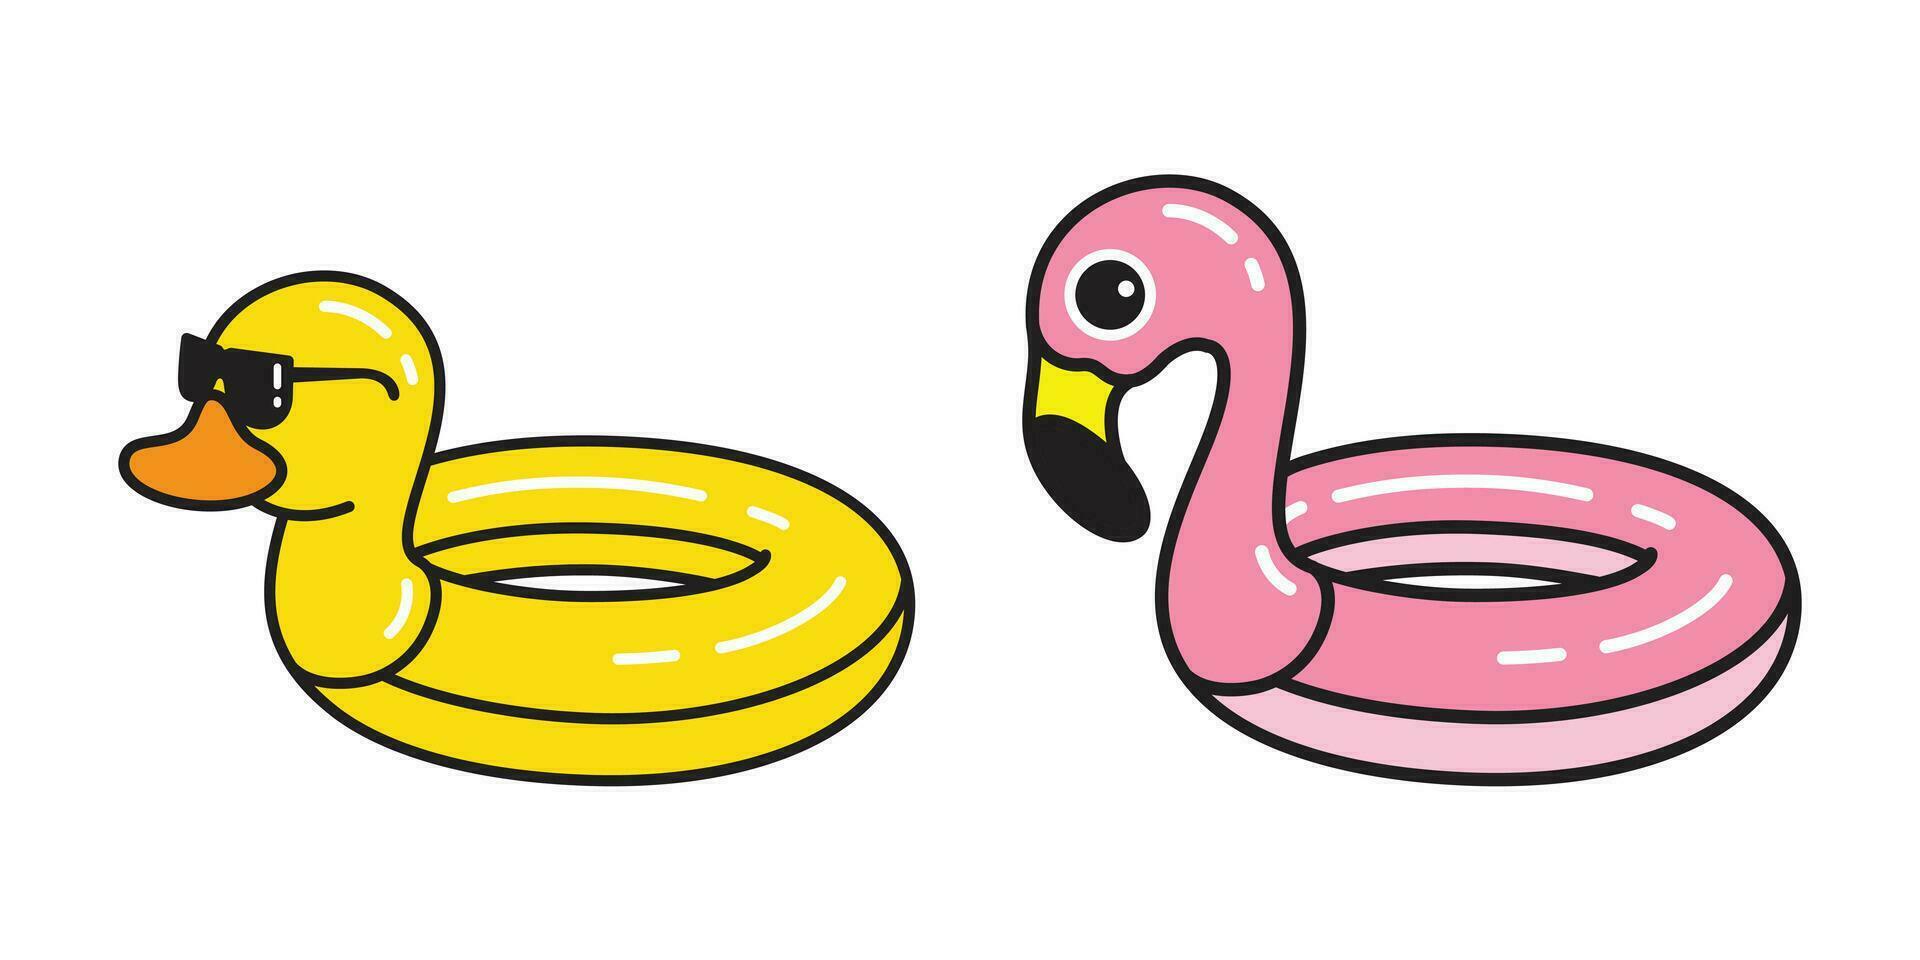 https://static.vecteezy.com/ti/gratis-vektor/p1/24720114-flamingo-ente-schwimmen-ring-schwimmbad-symbol-charakter-karikatur-illustration-vektor.jpg